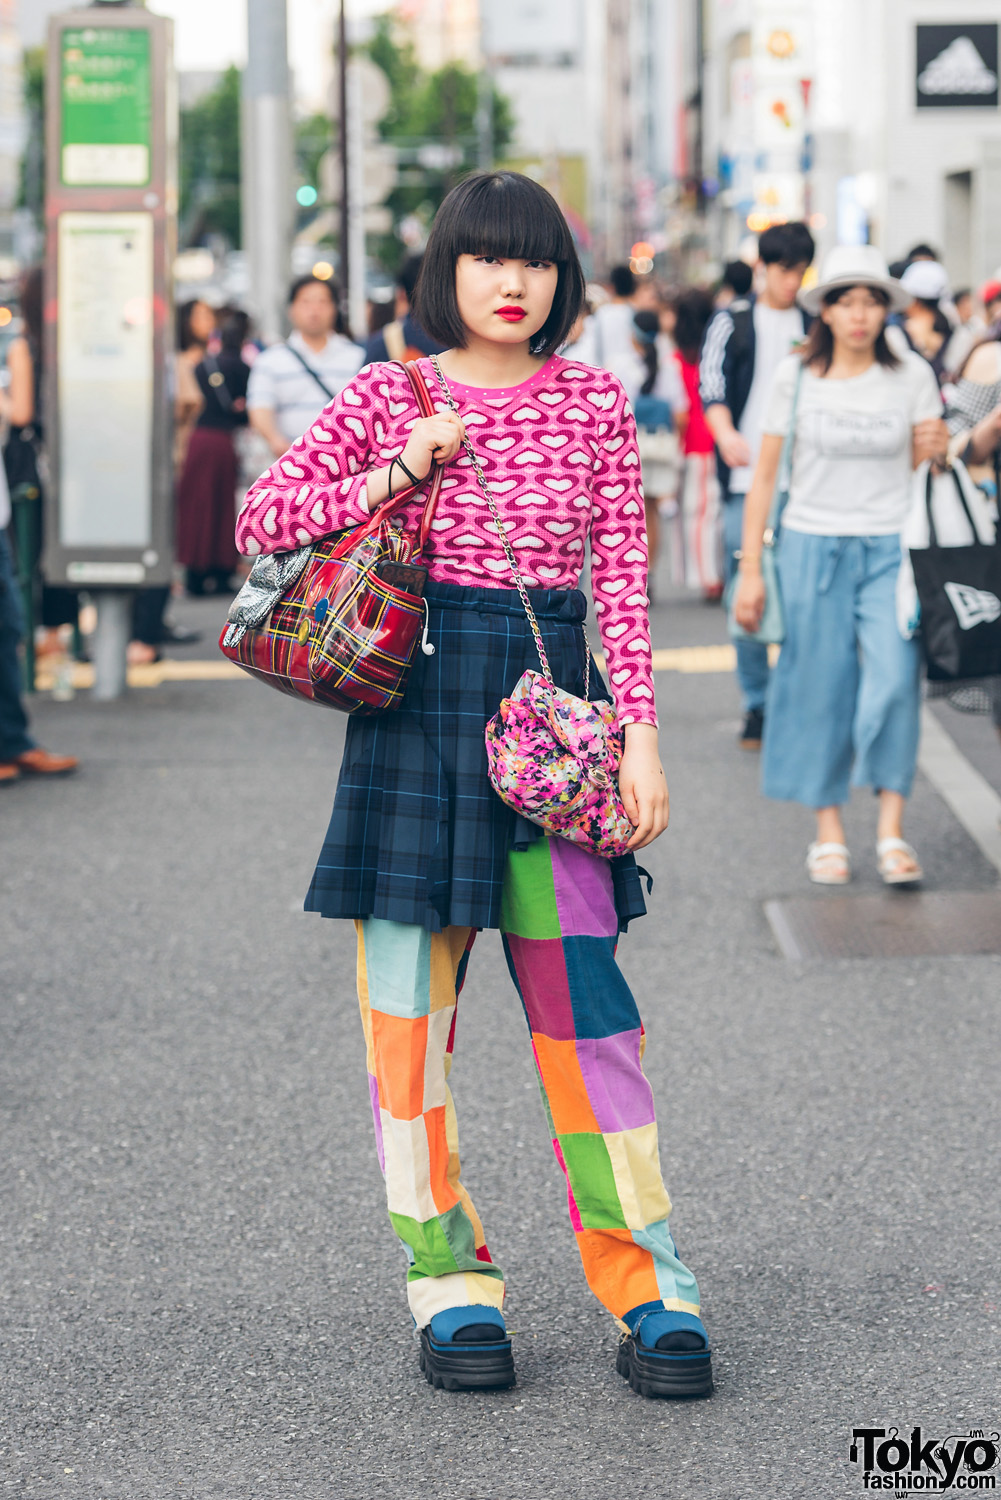 Harajuku Girl in Colorful Mixed Prints Fashion w/ Kinji & Pin Nap Vintage